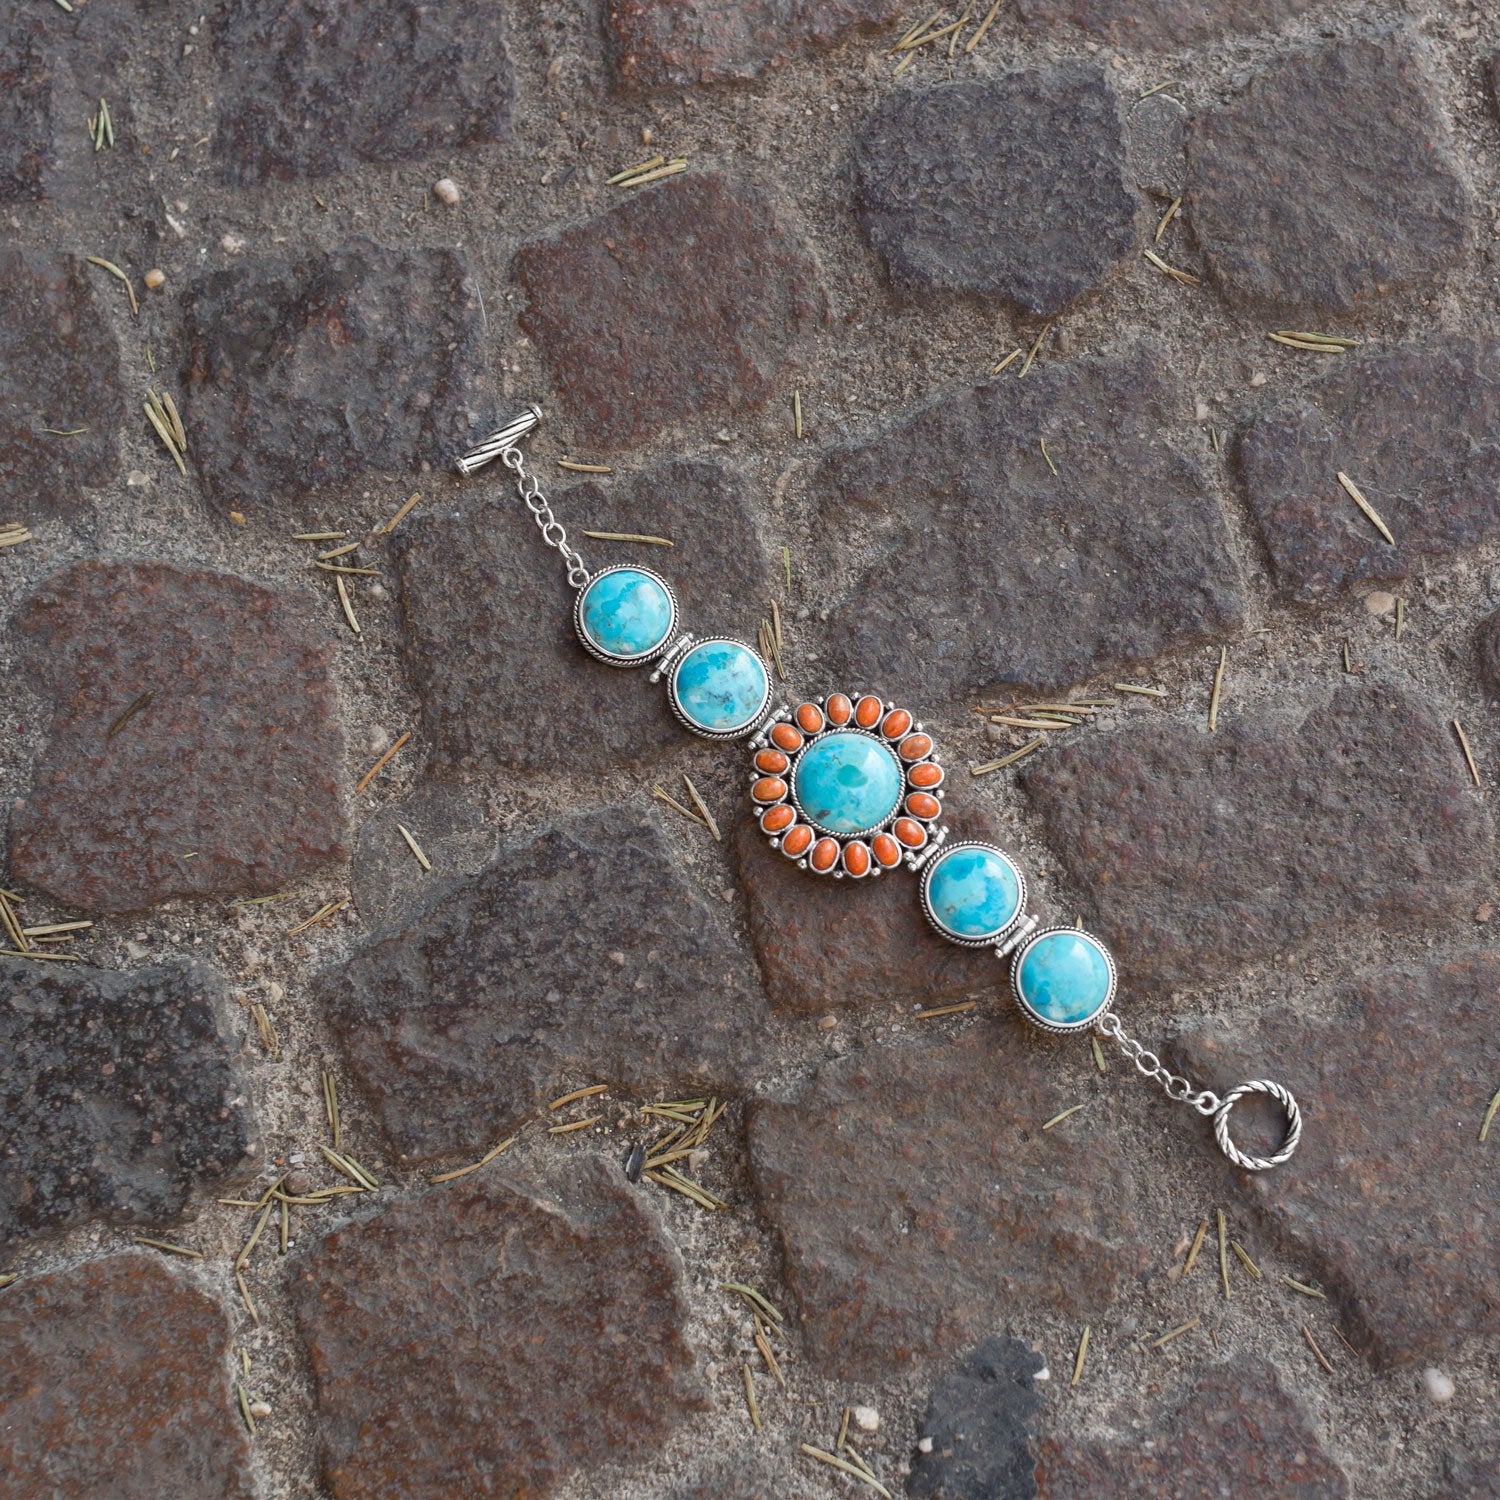 7.5" Reconstituted Turquoise and Coral Sunburst Toggle Bracelet - Joyeria Lady